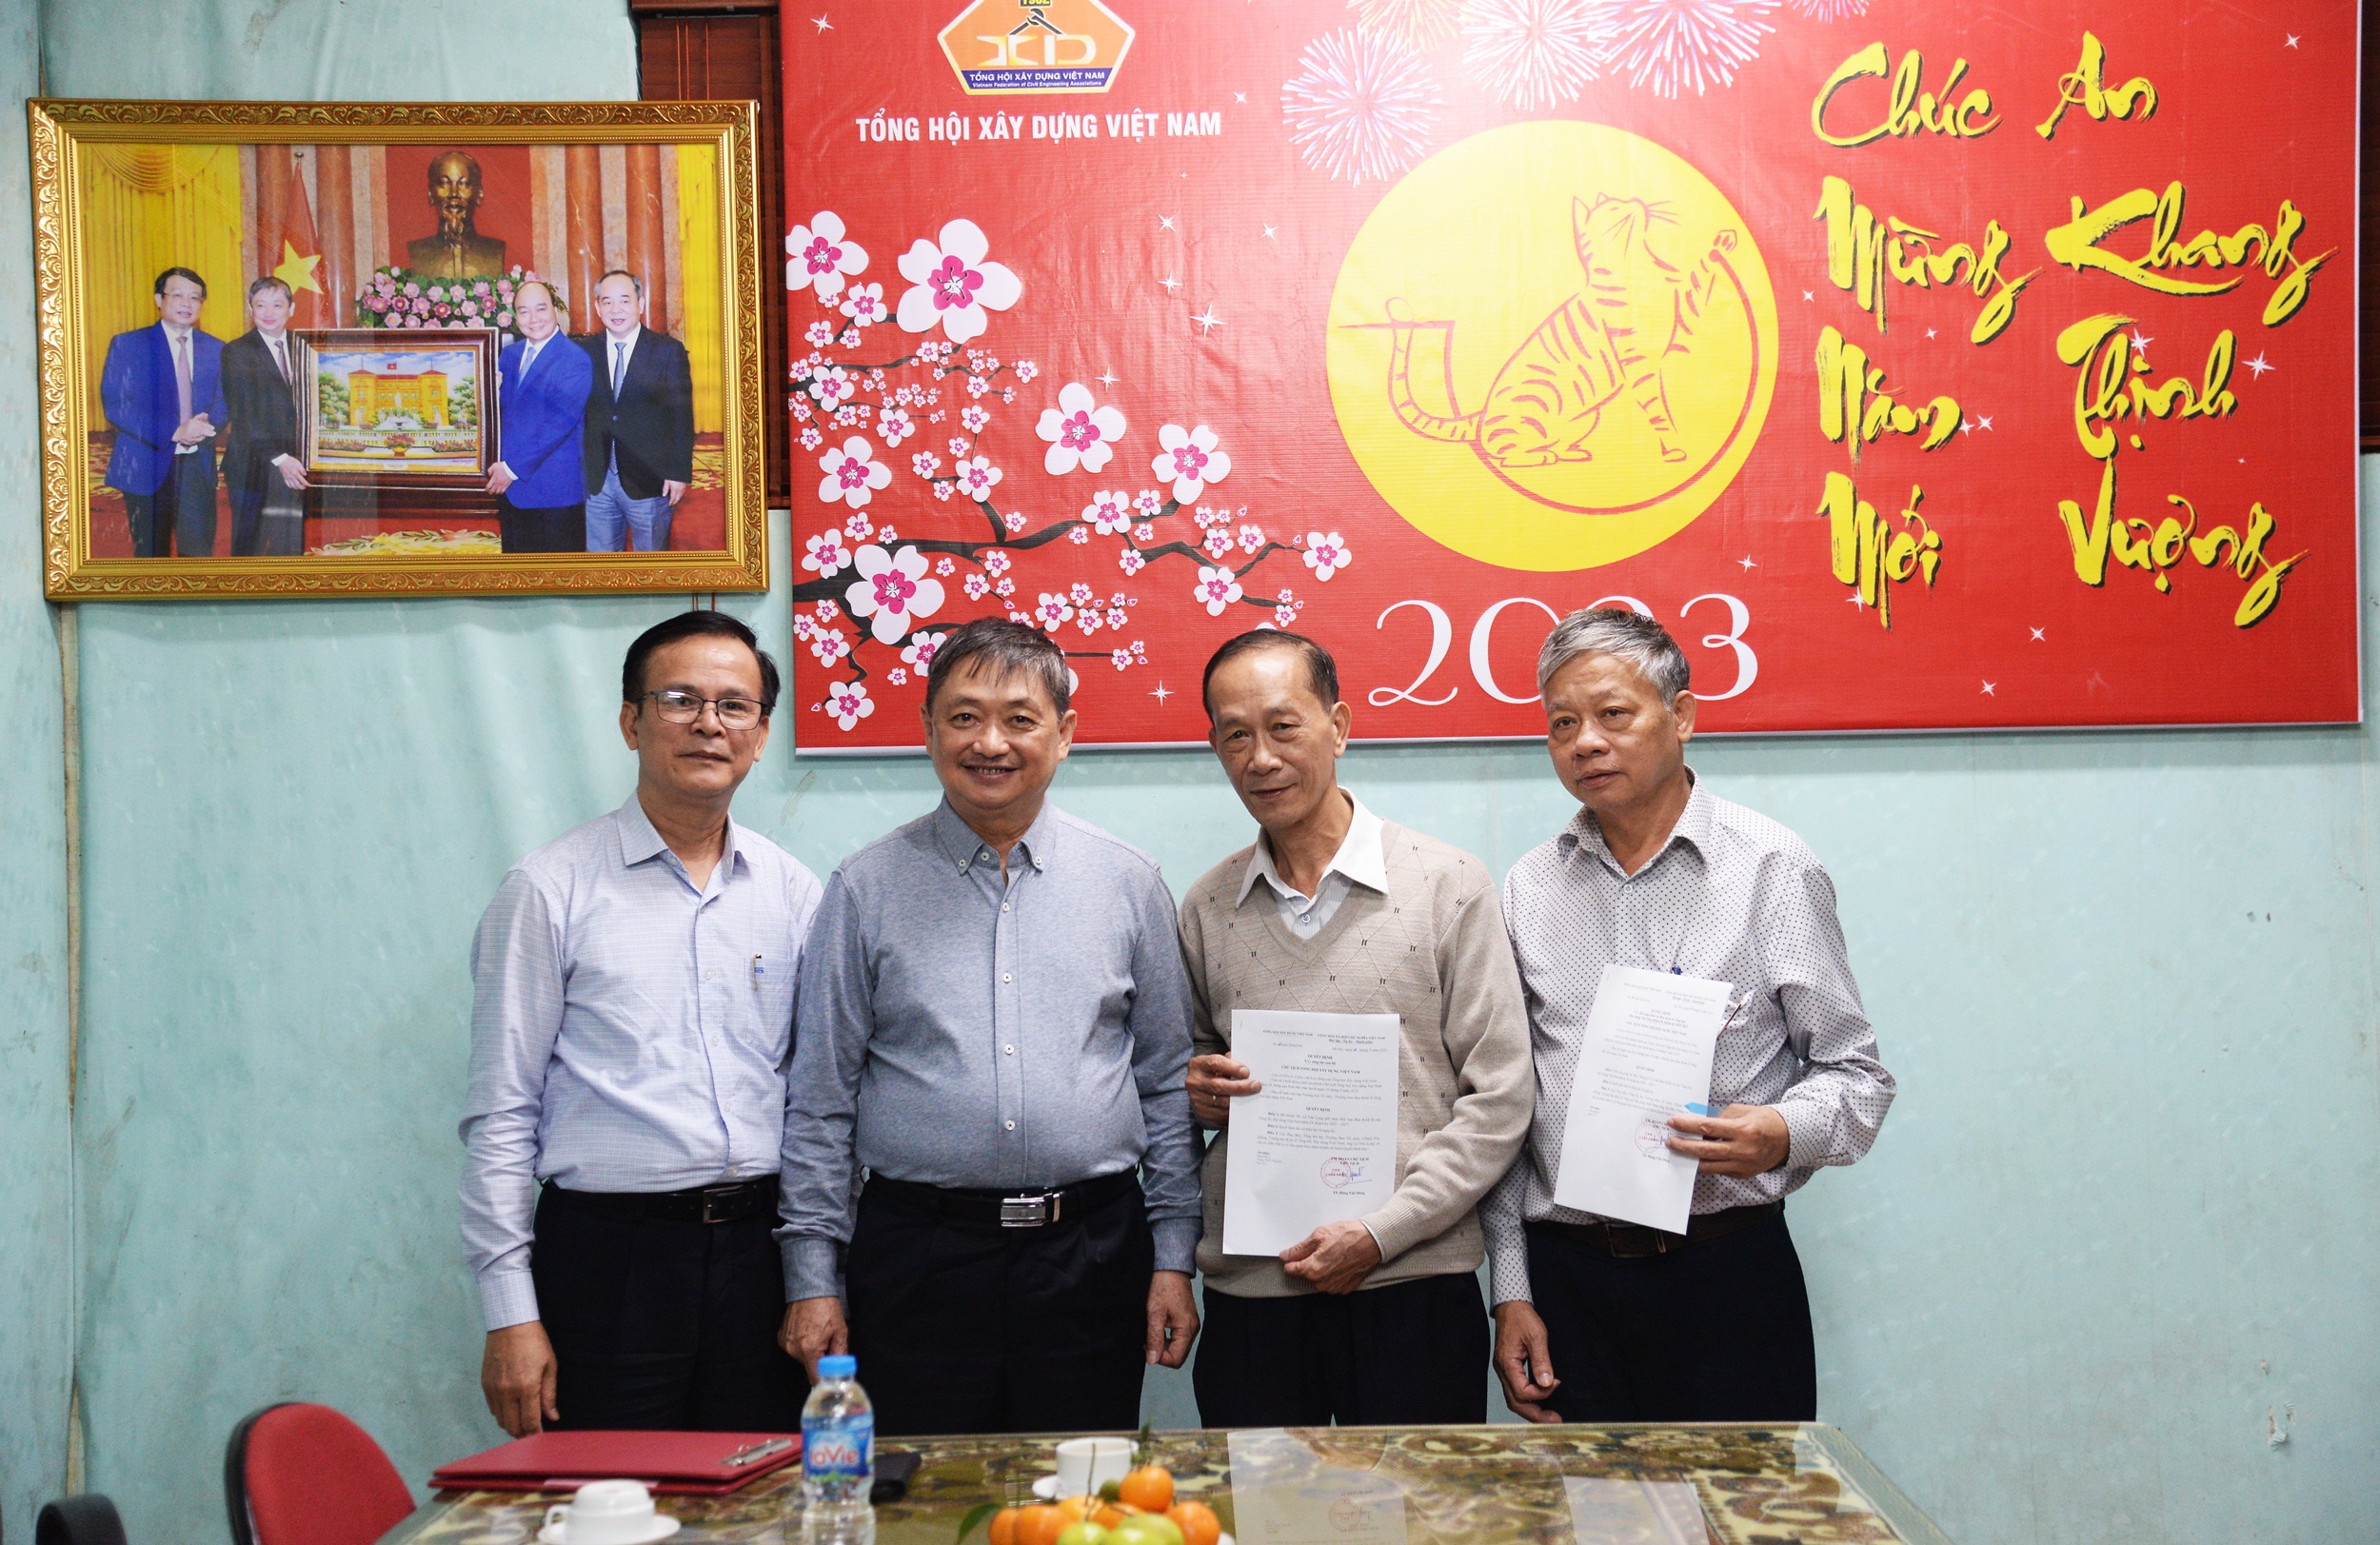 Trao quyết định bổ nhiệm Phó ban Kinh tế Tổng hội Xây dựng Việt Nam cho TS Lê Văn Long